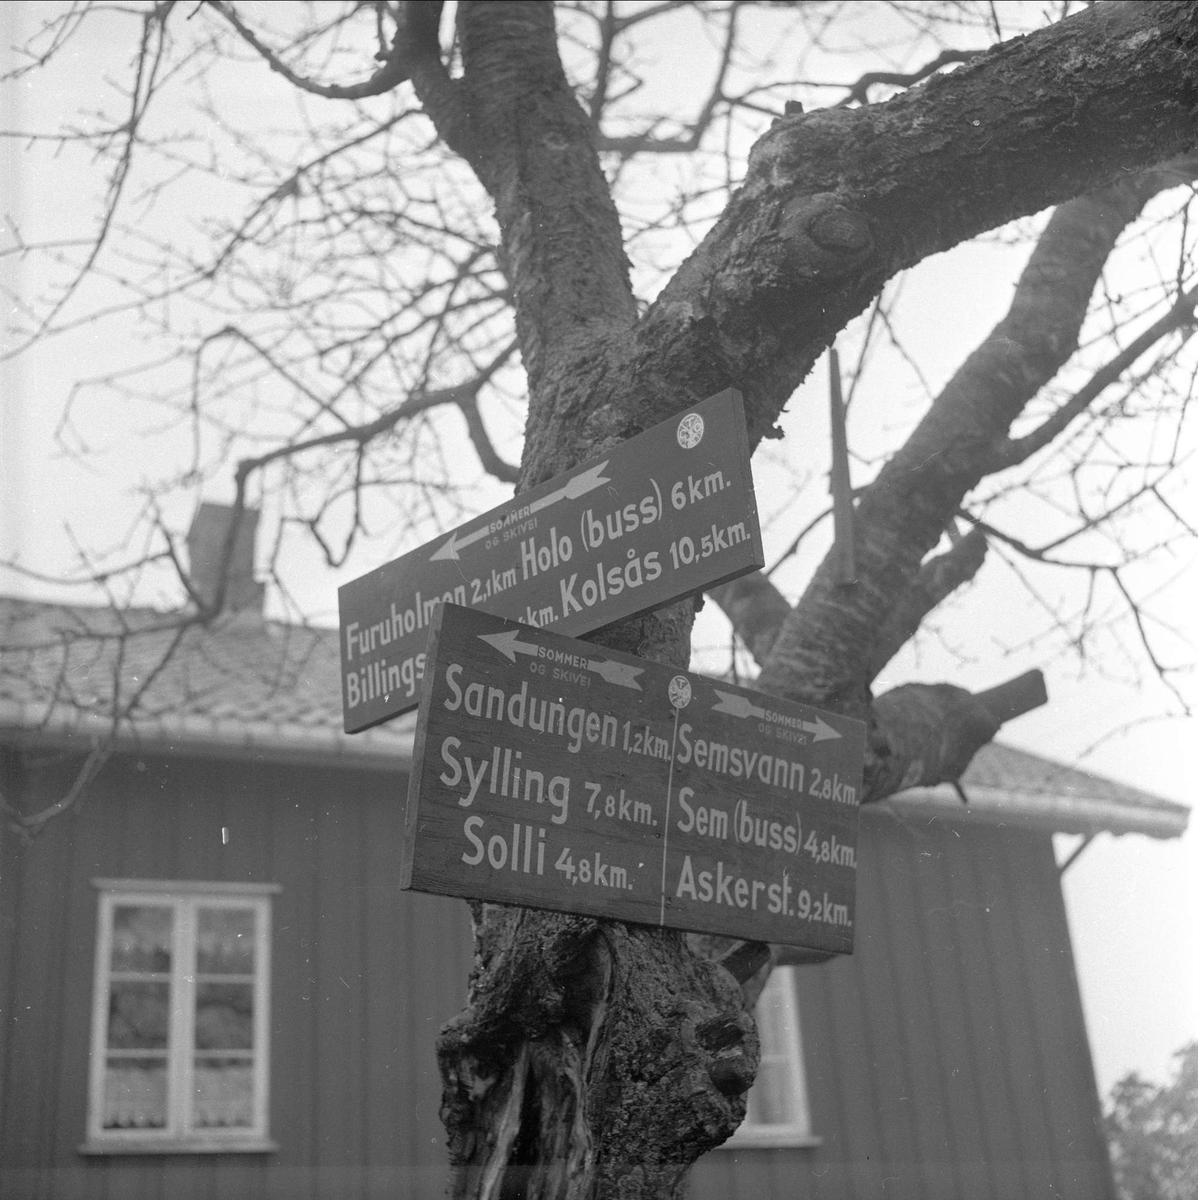  Øvre Rustan, Bærum, 08.11.1958. Bolig og tre med skilt, veivisere.